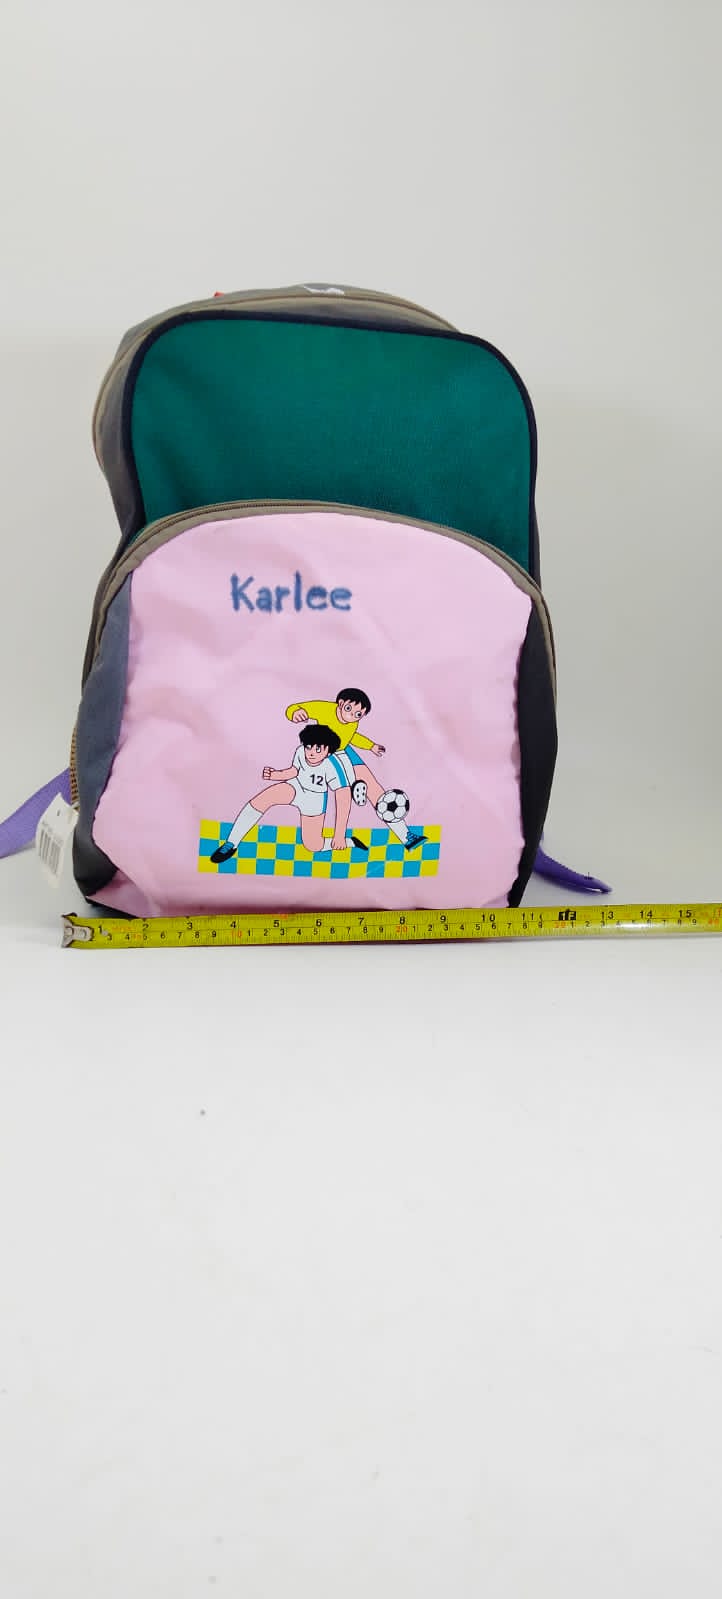 Karlee School Bag